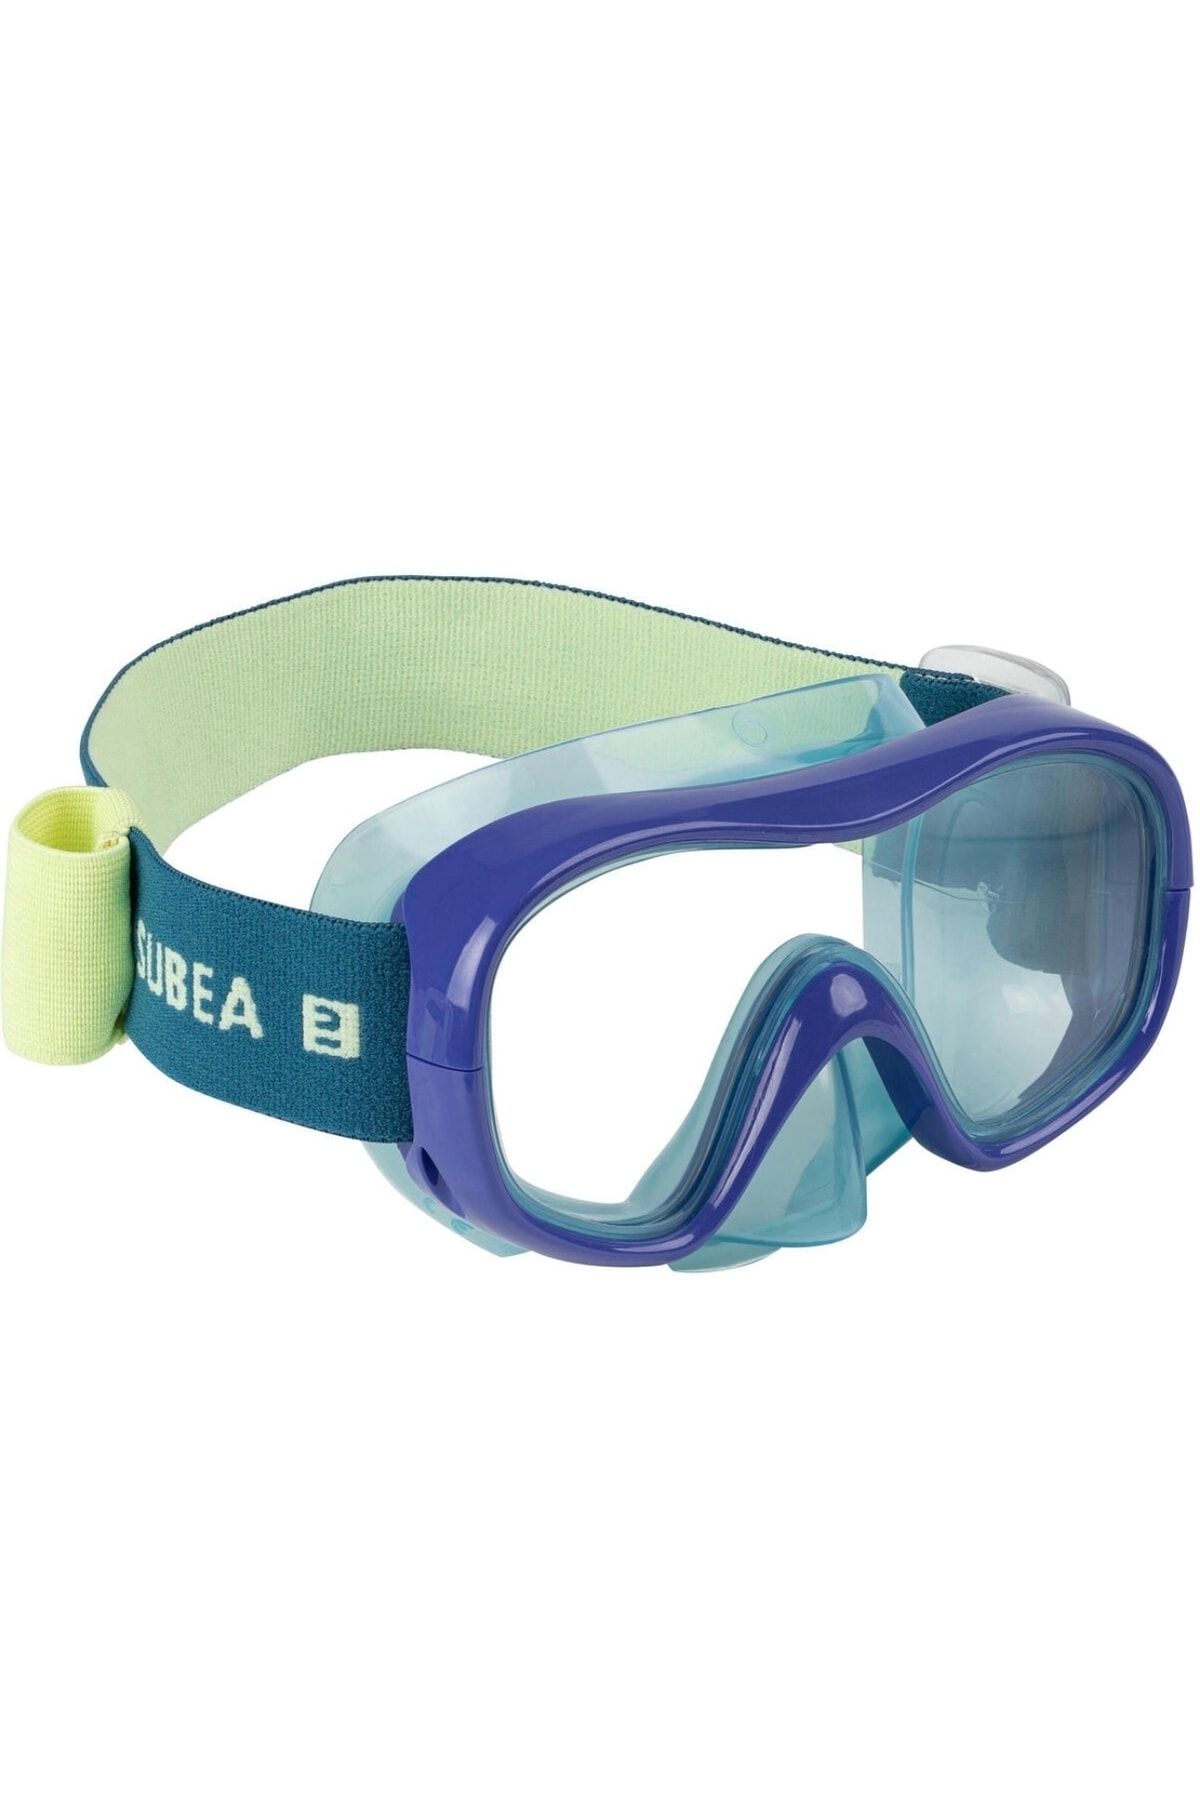 Decathlon Yetişkin Çocuk Dalış Maskesi - Mavi - 100 Confort